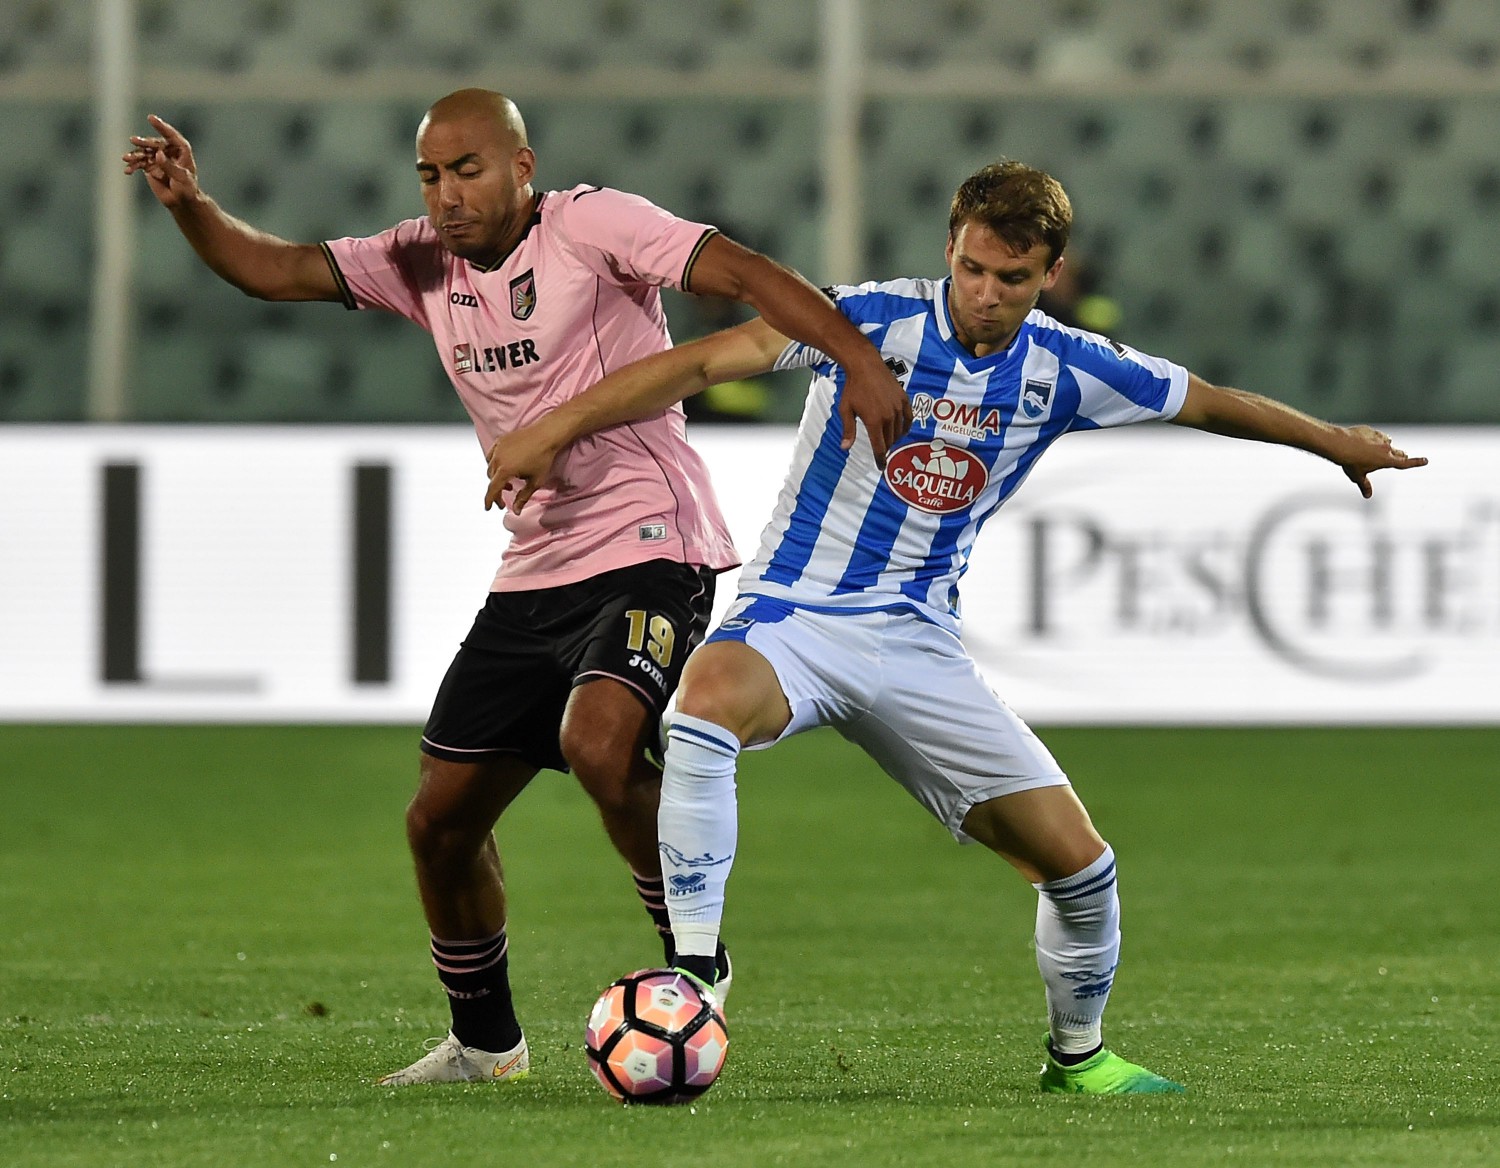 Il Pescara chiude con una vittoria in casa: il Palermo va ko 2-0 - il Giornale